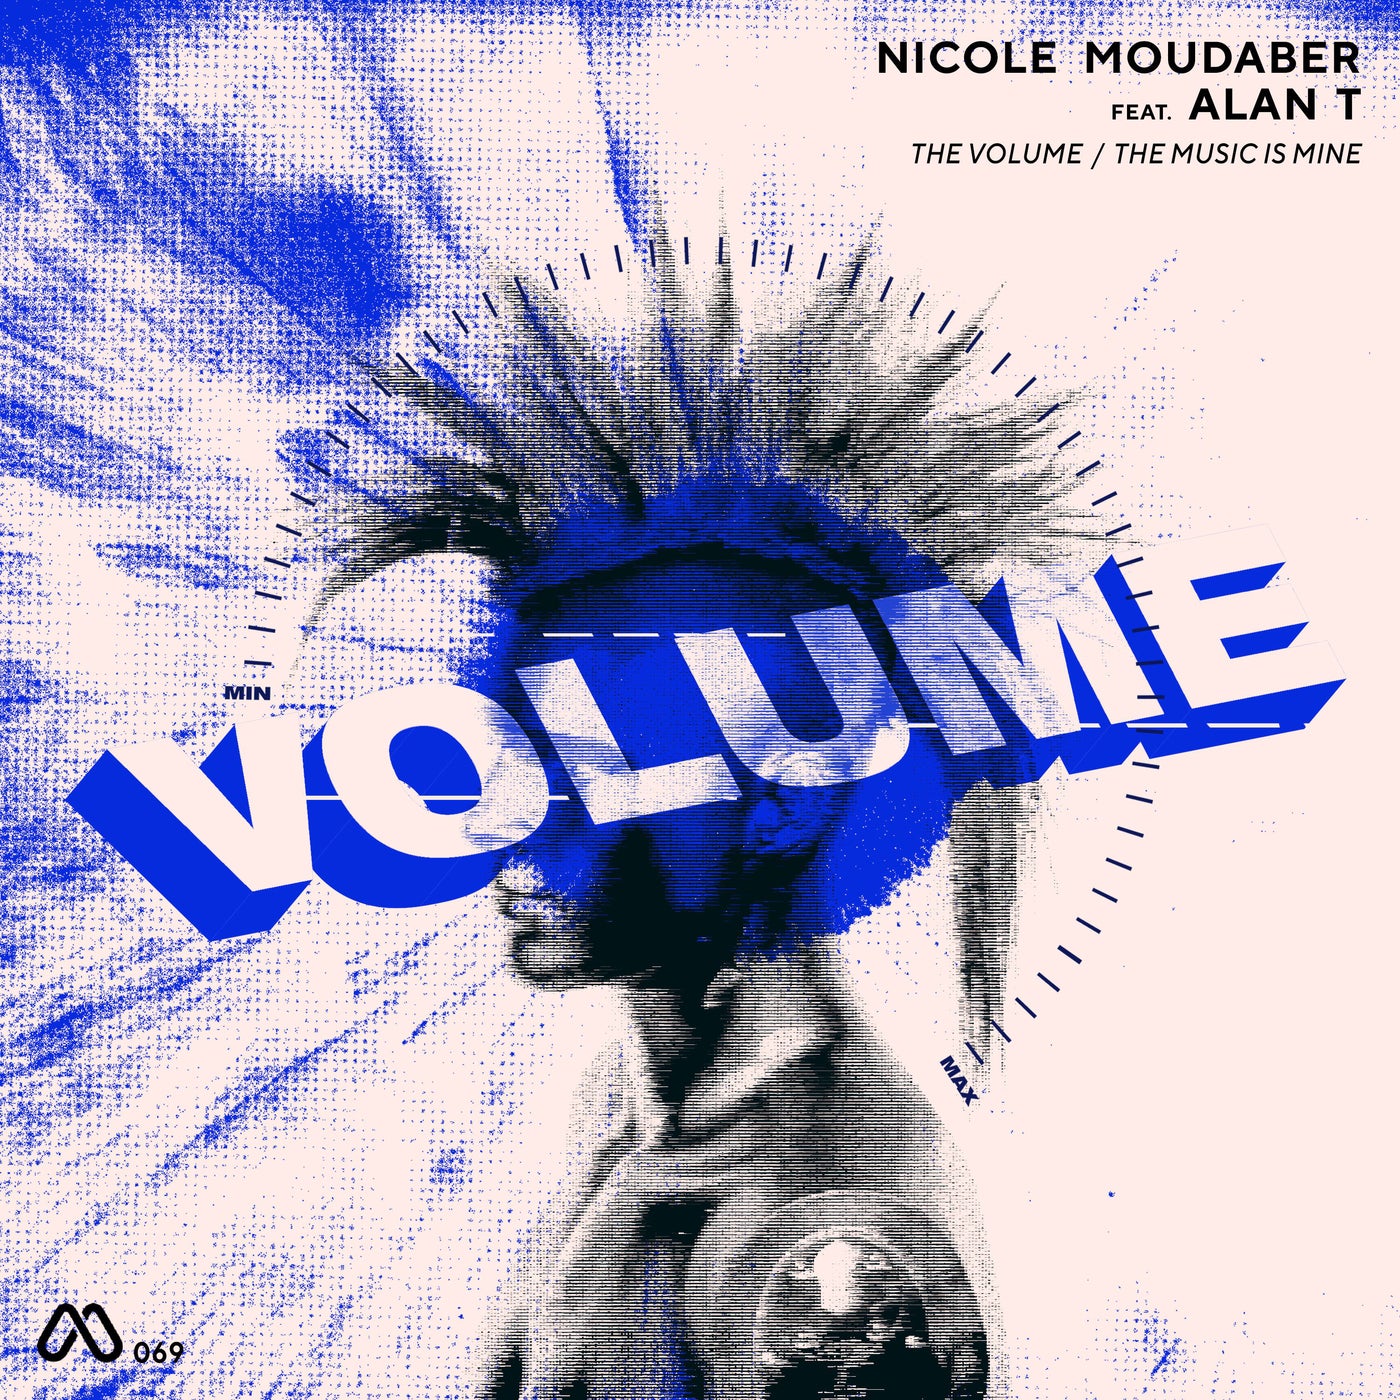 The Volume